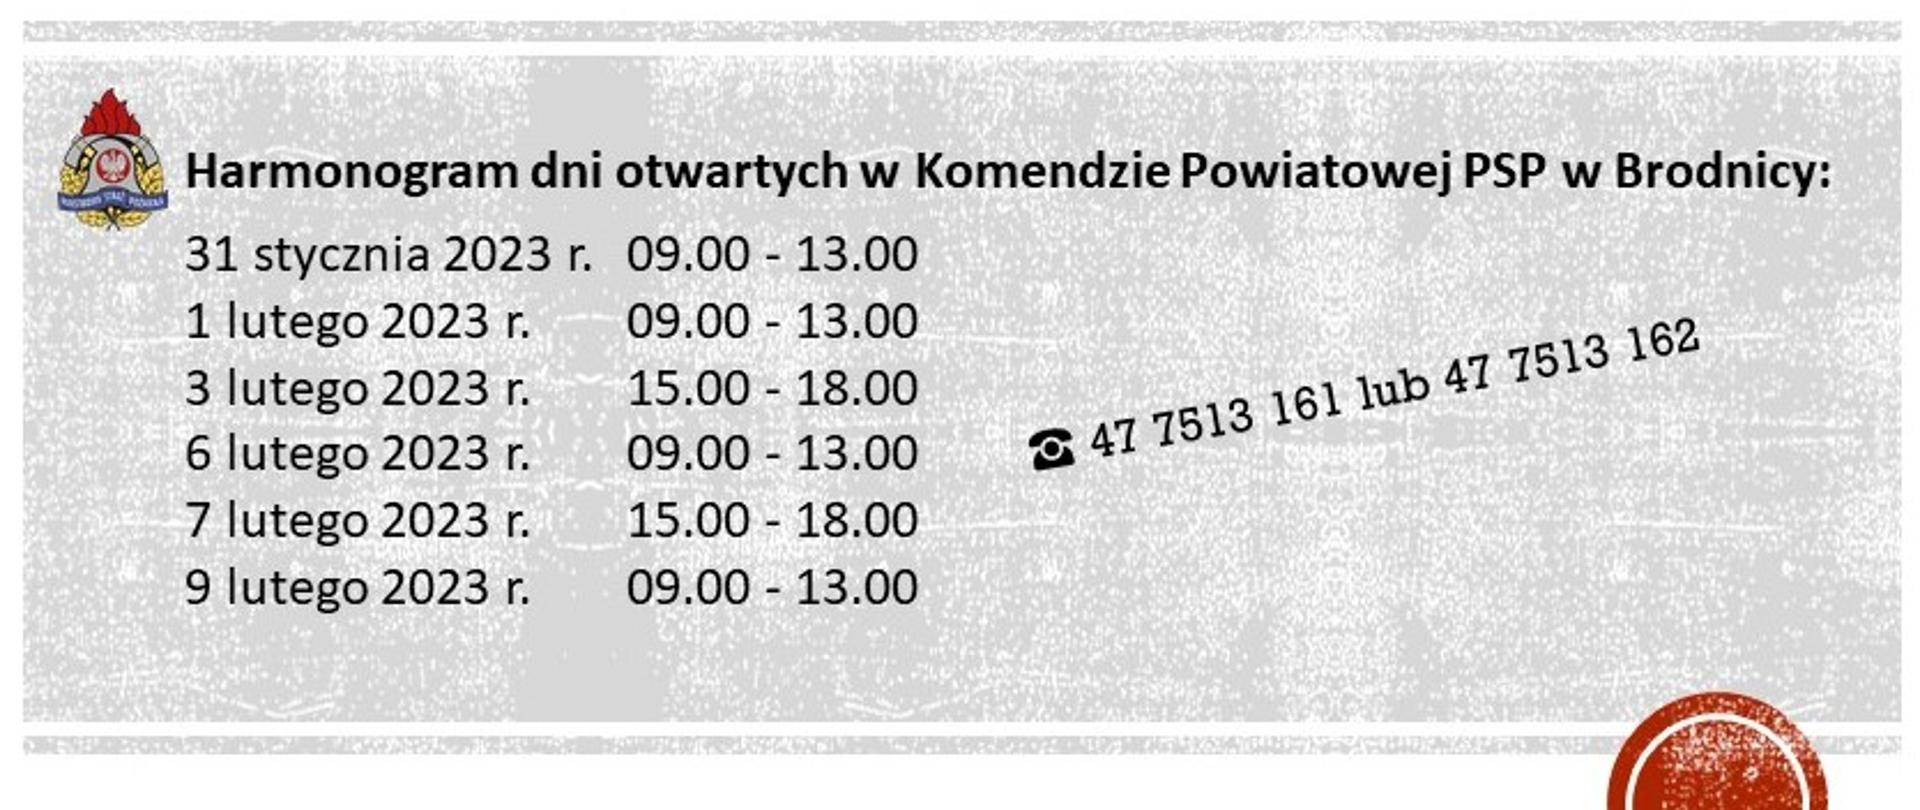 Zdjęcie przedstawia harmonogram odwiedzin w KP PSP w Brodnicy